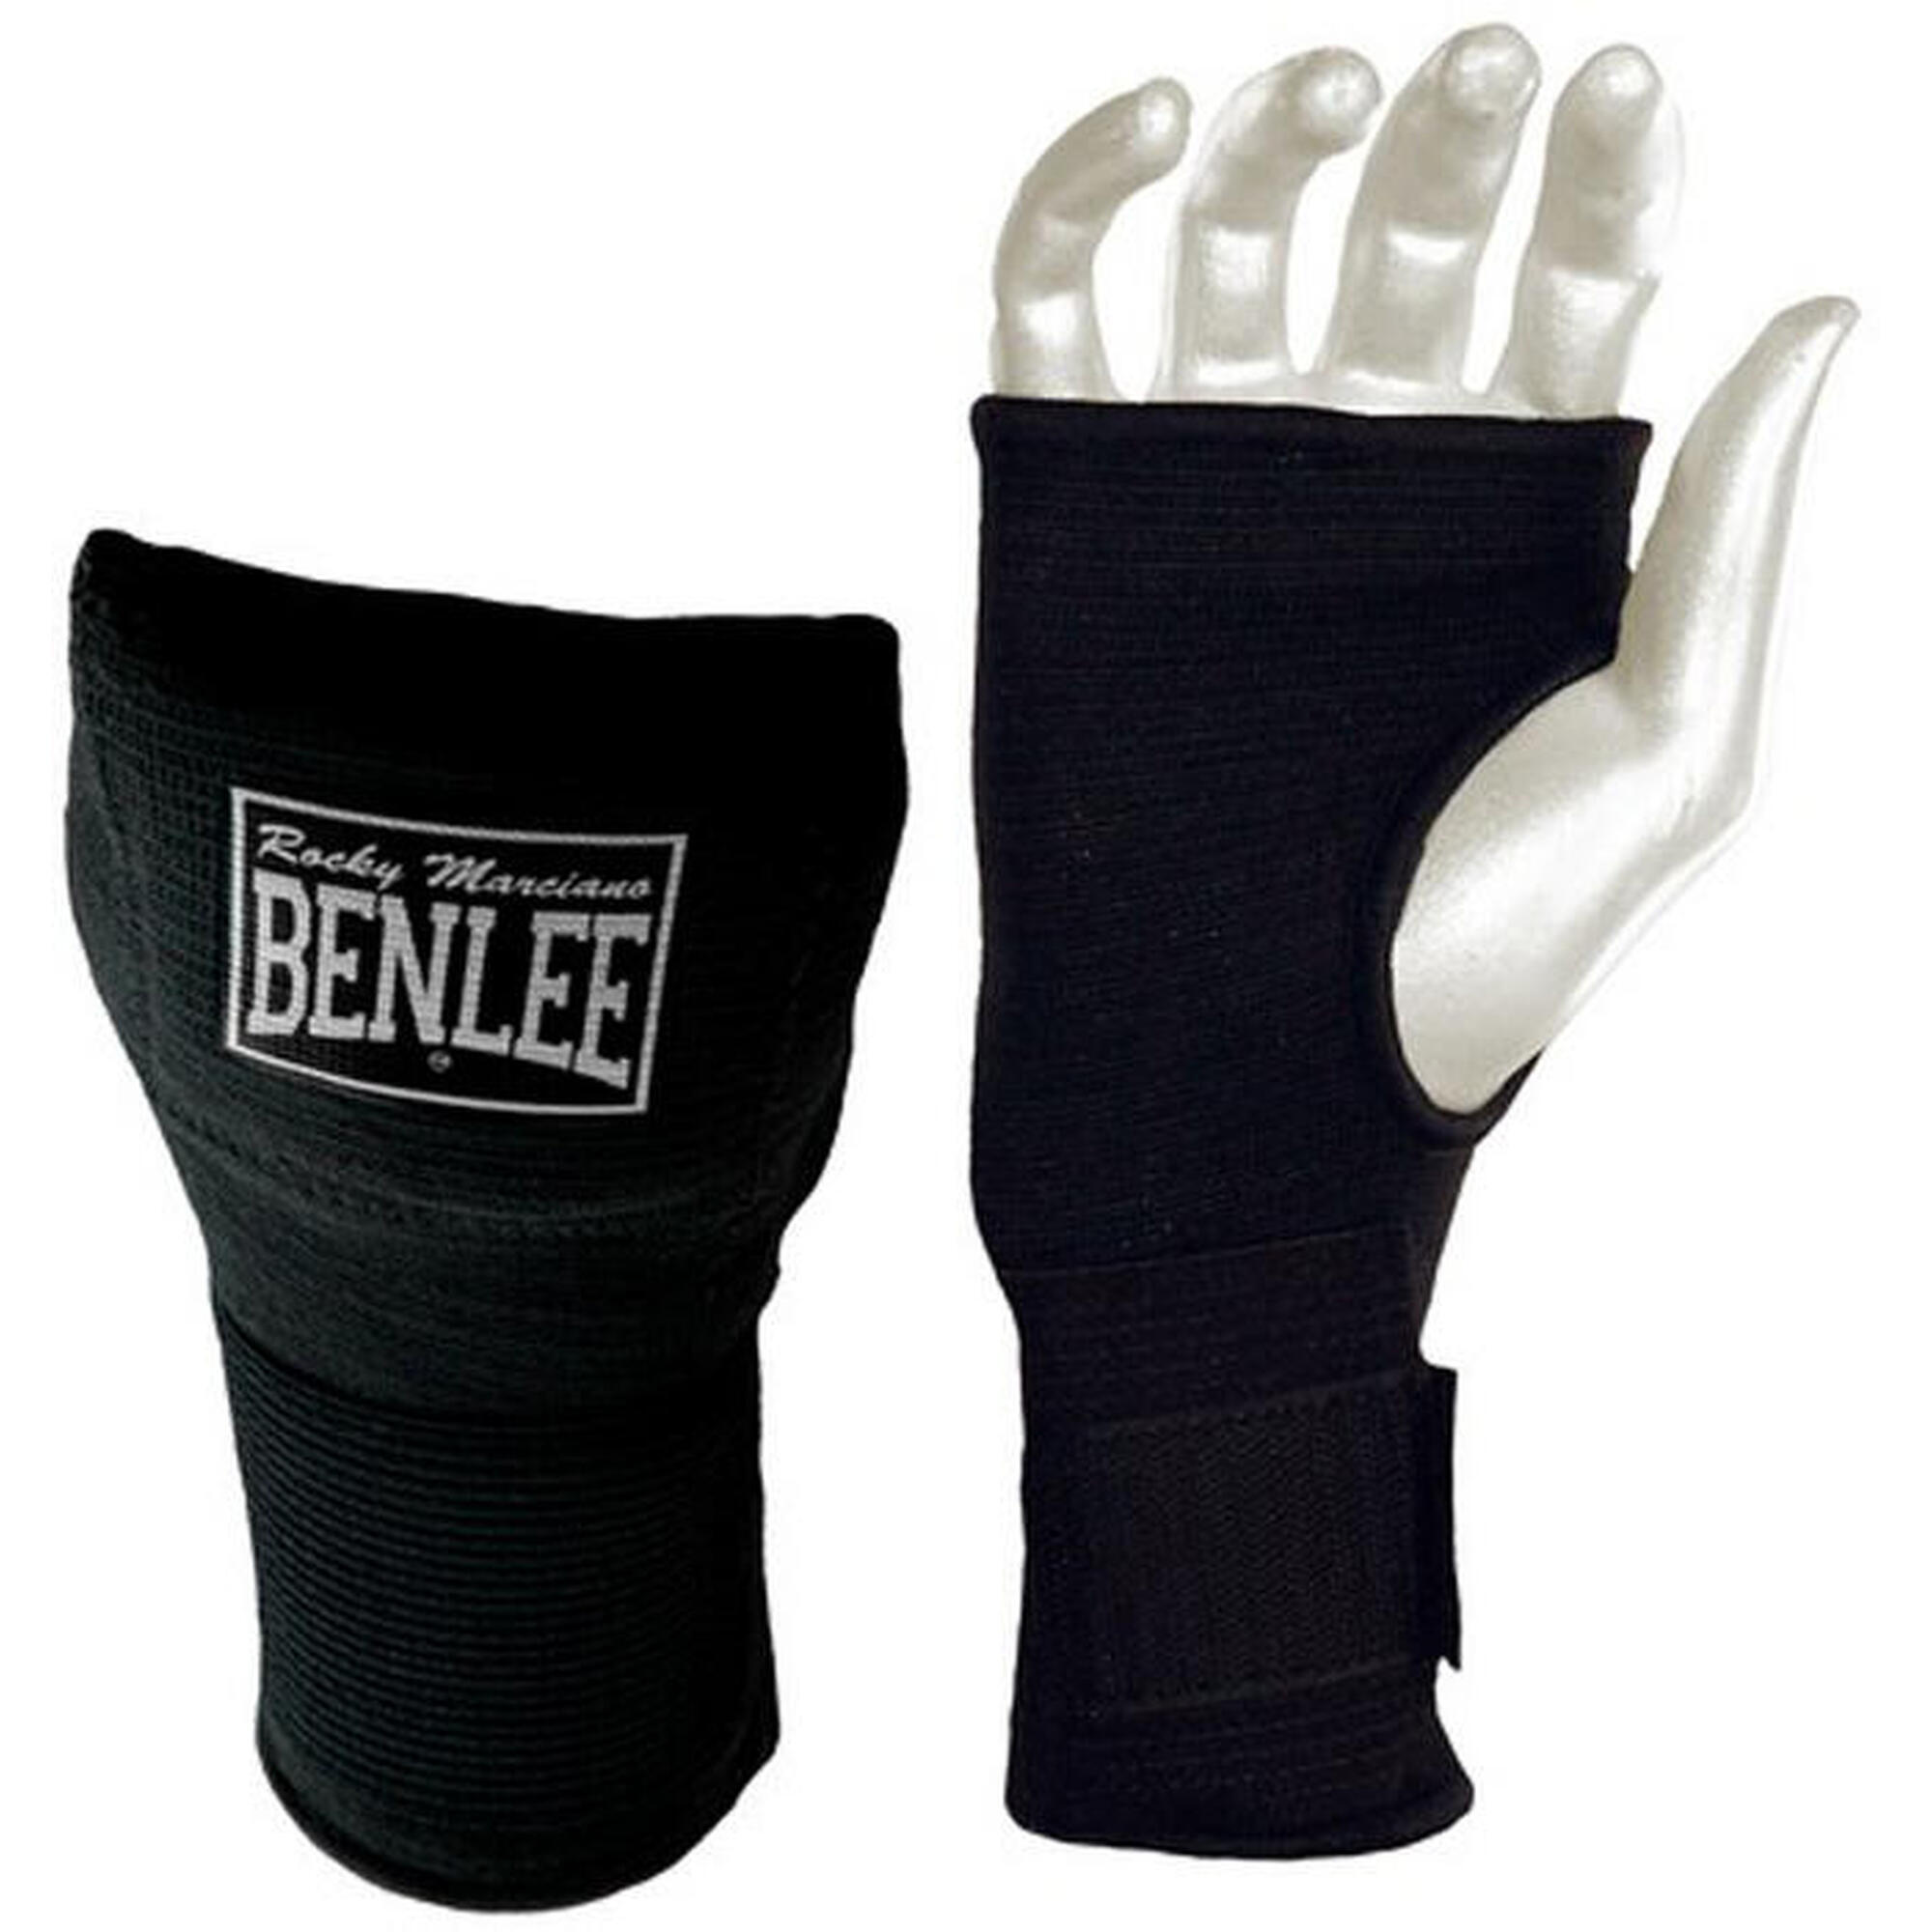 Bandage élastique poignets Benlee Fist